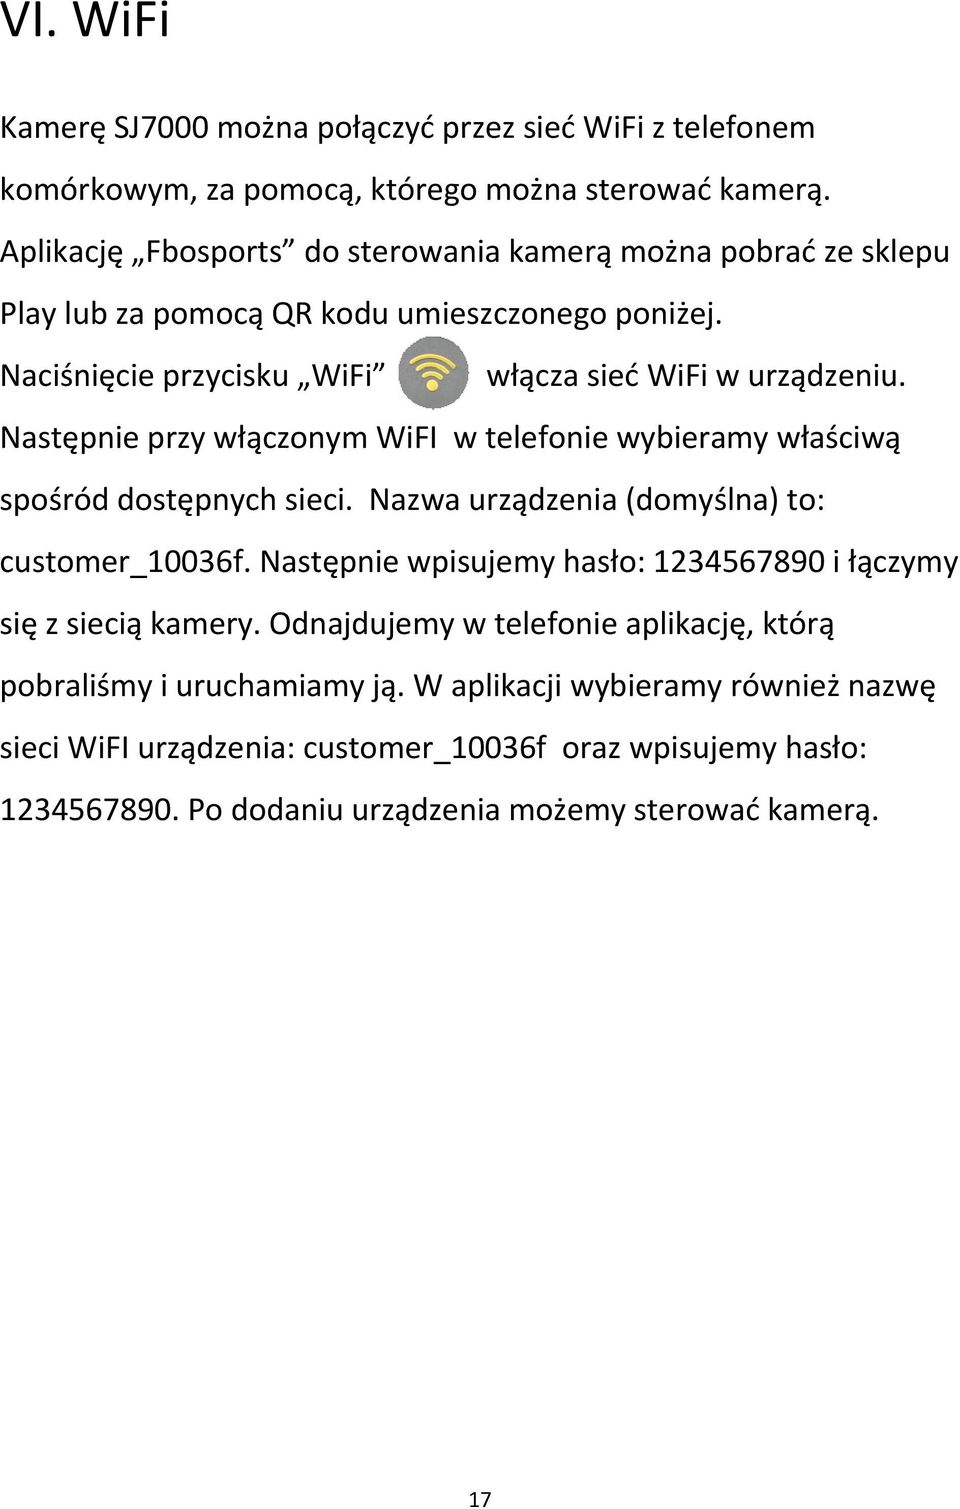 Następnie przy włączonym WiFI w telefonie wybieramy właściwą spośród dostępnych sieci. Nazwa urządzenia (domyślna) to: customer_10036f.